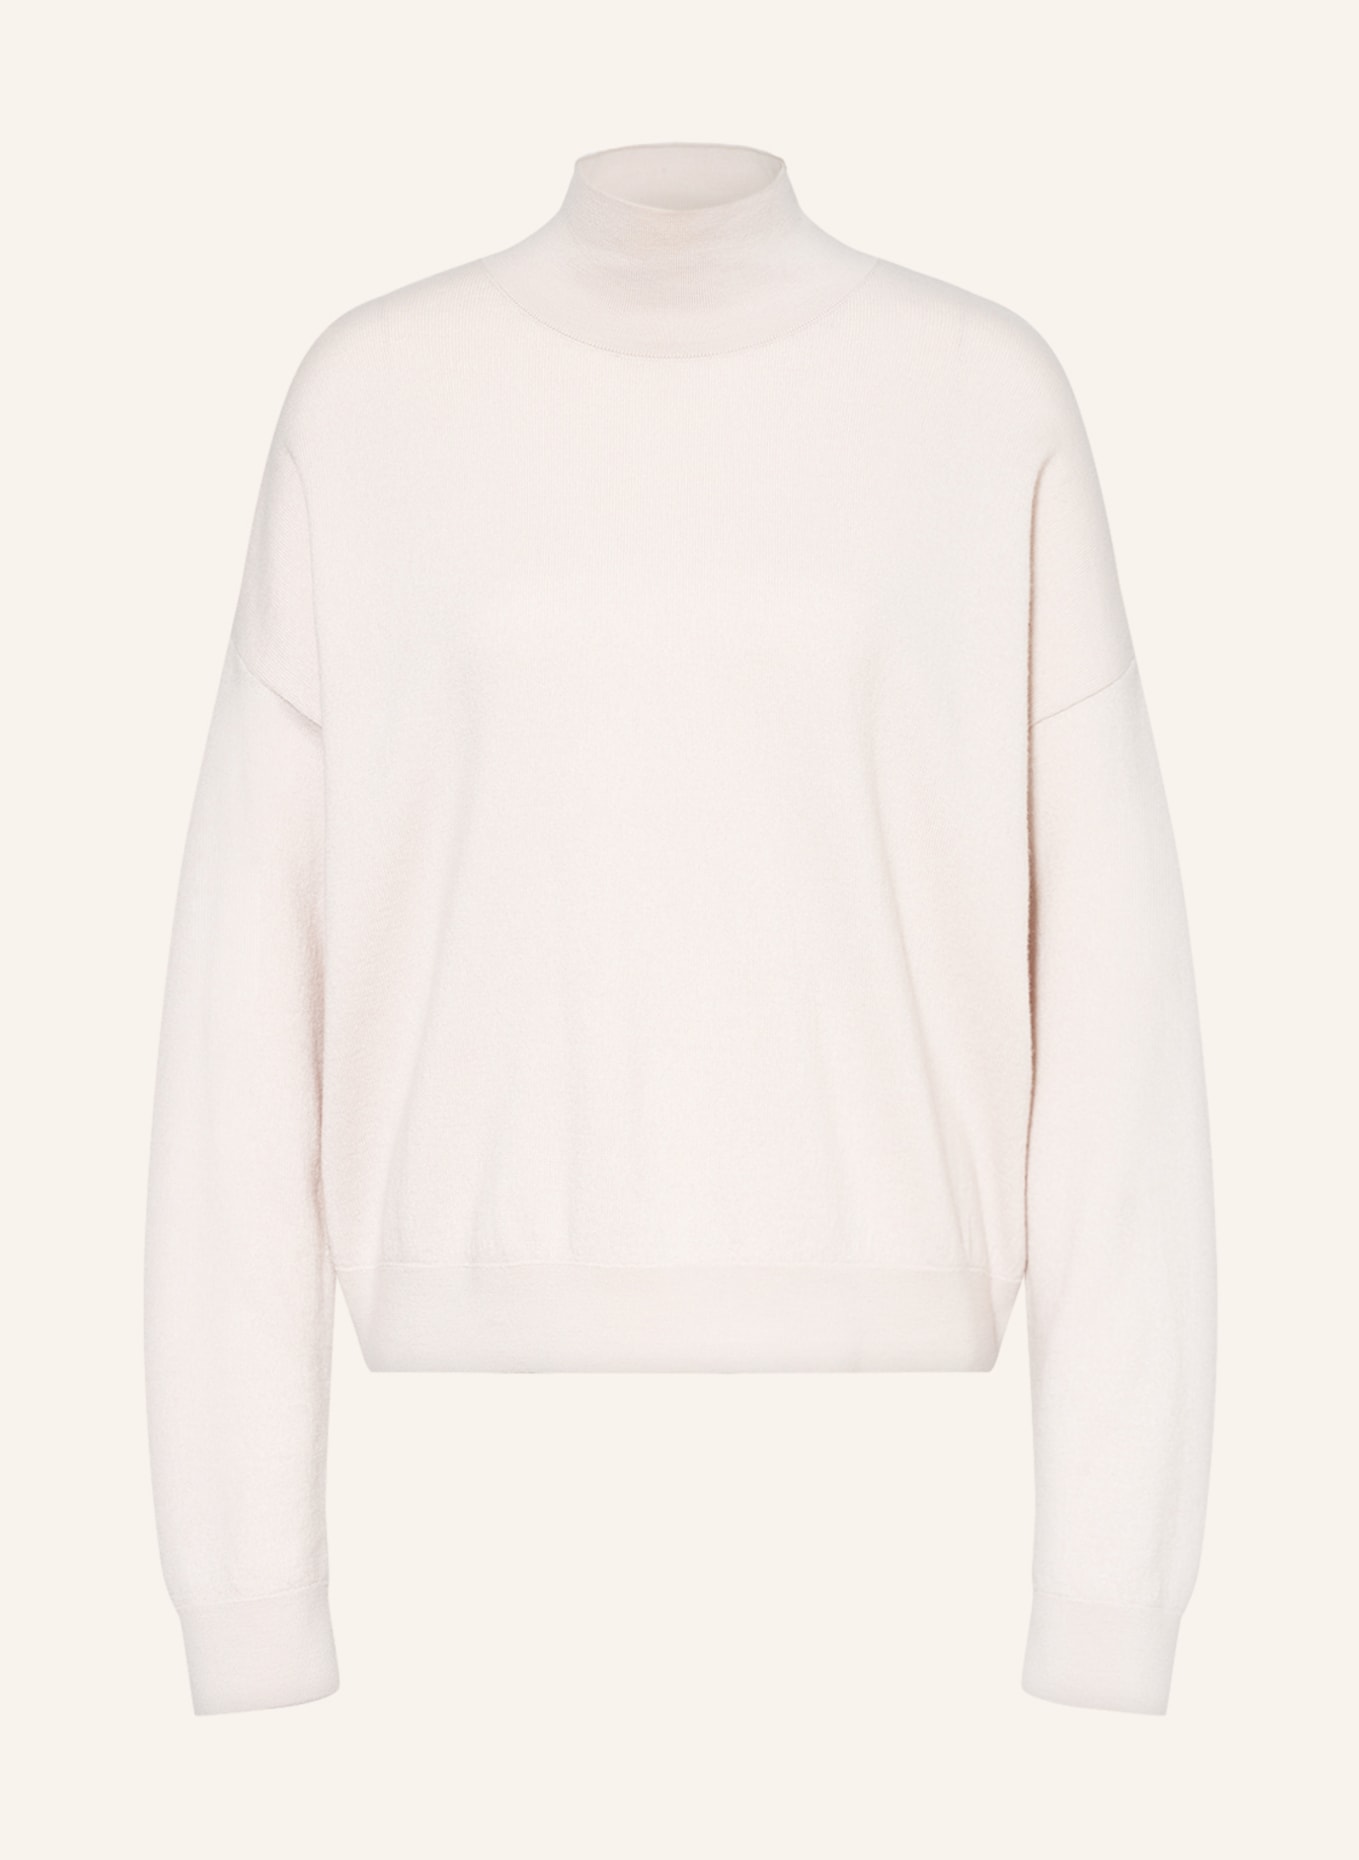 LANIUS Sweater, Color: CREAM (Image 1)